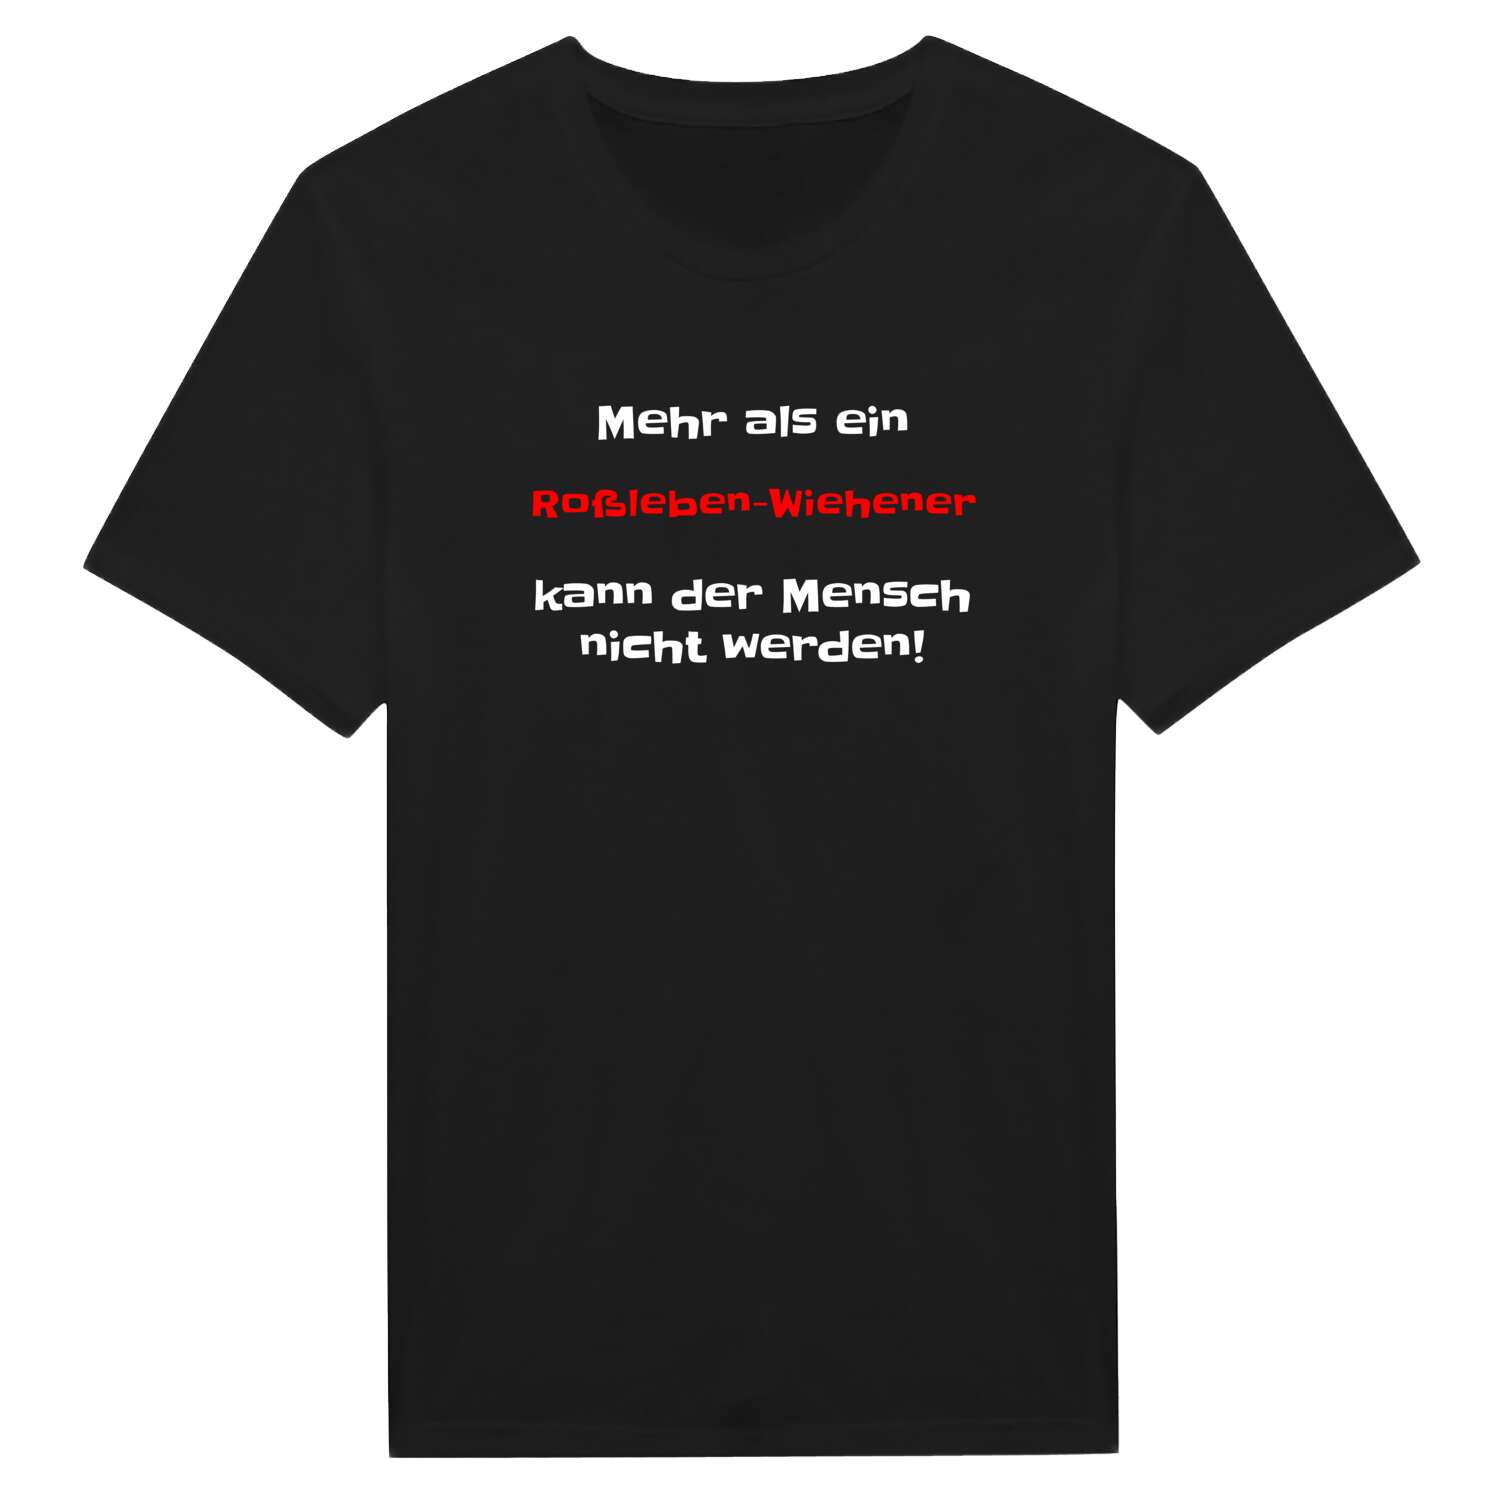 Roßleben-Wiehe T-Shirt »Mehr als ein«